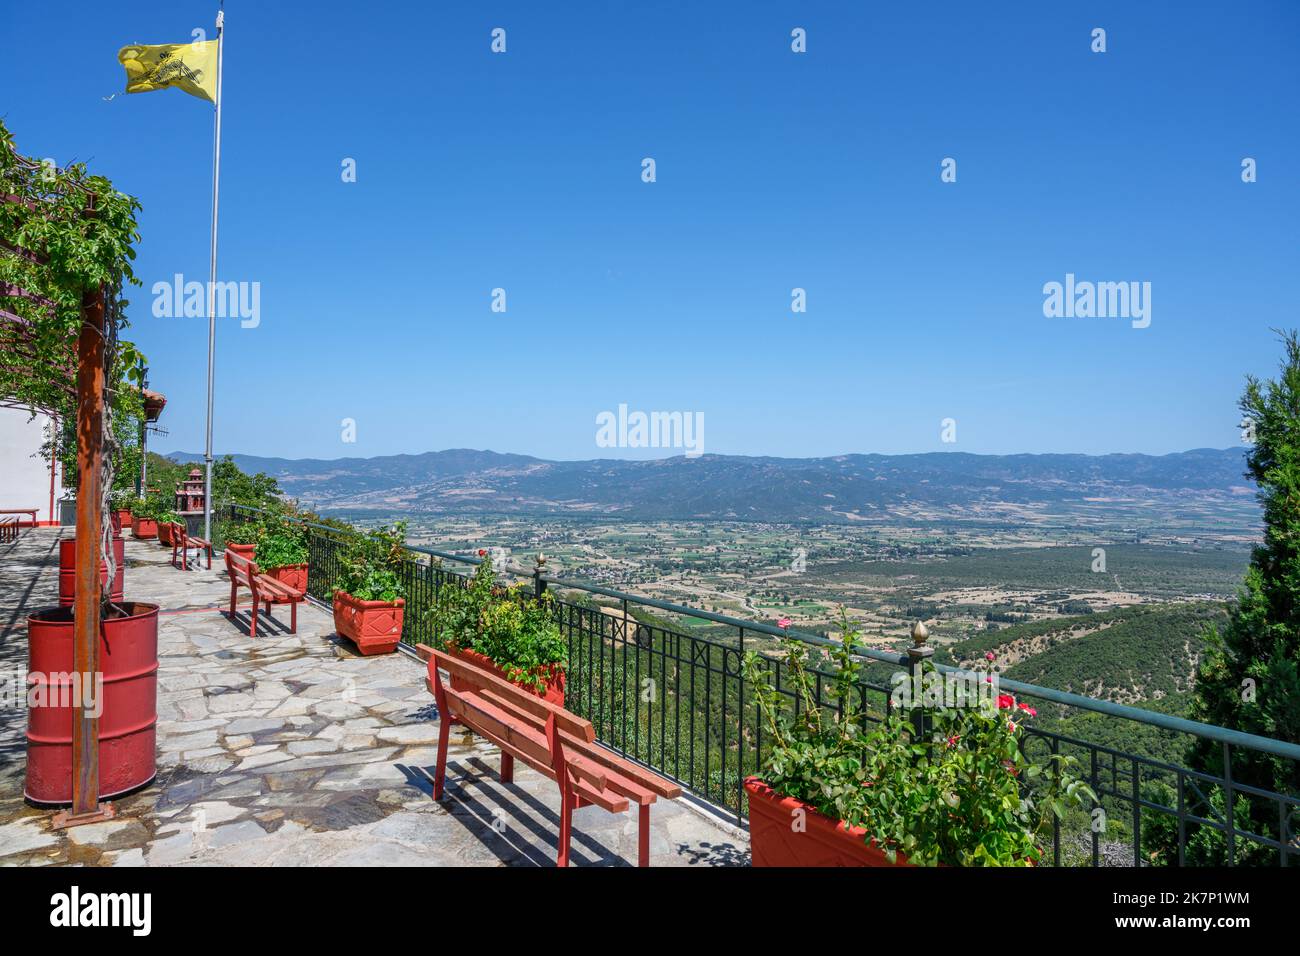 Vista dalla terrazza del monastero di Agathon (Agathonos), Parco Nazionale di Iti, Grecia centrale, Grecia Foto Stock